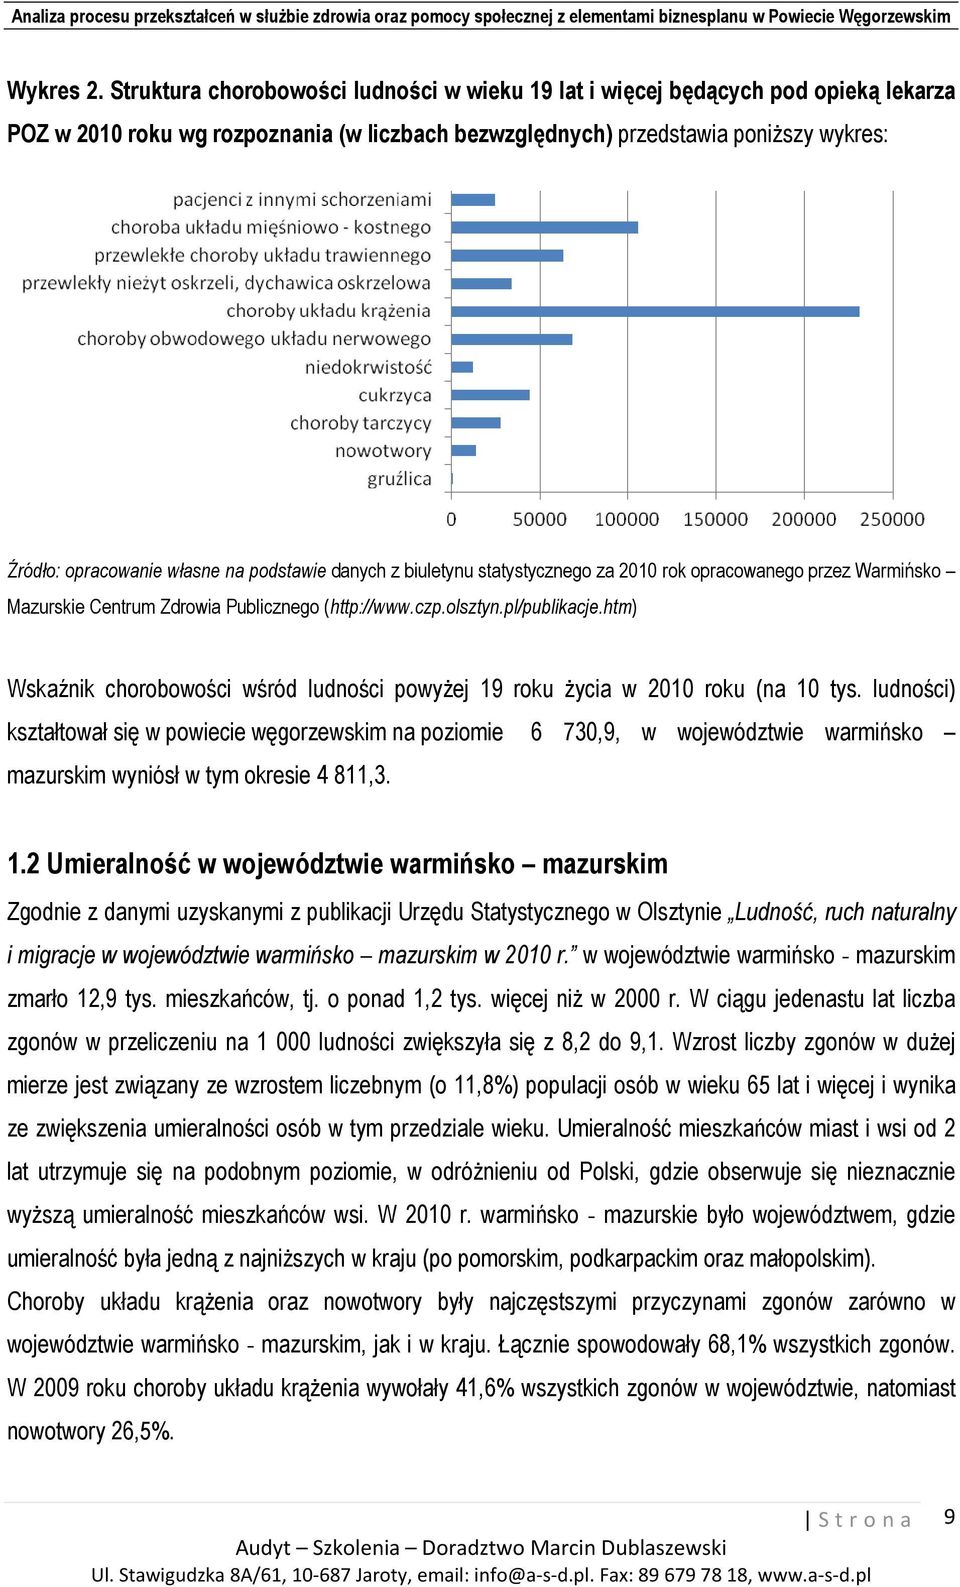 na podstawie danych z biuletynu statystycznego za 2010 rok opracowanego przez Warmińsko Mazurskie Centrum Zdrowia Publicznego (http://www.czp.olsztyn.pl/publikacje.